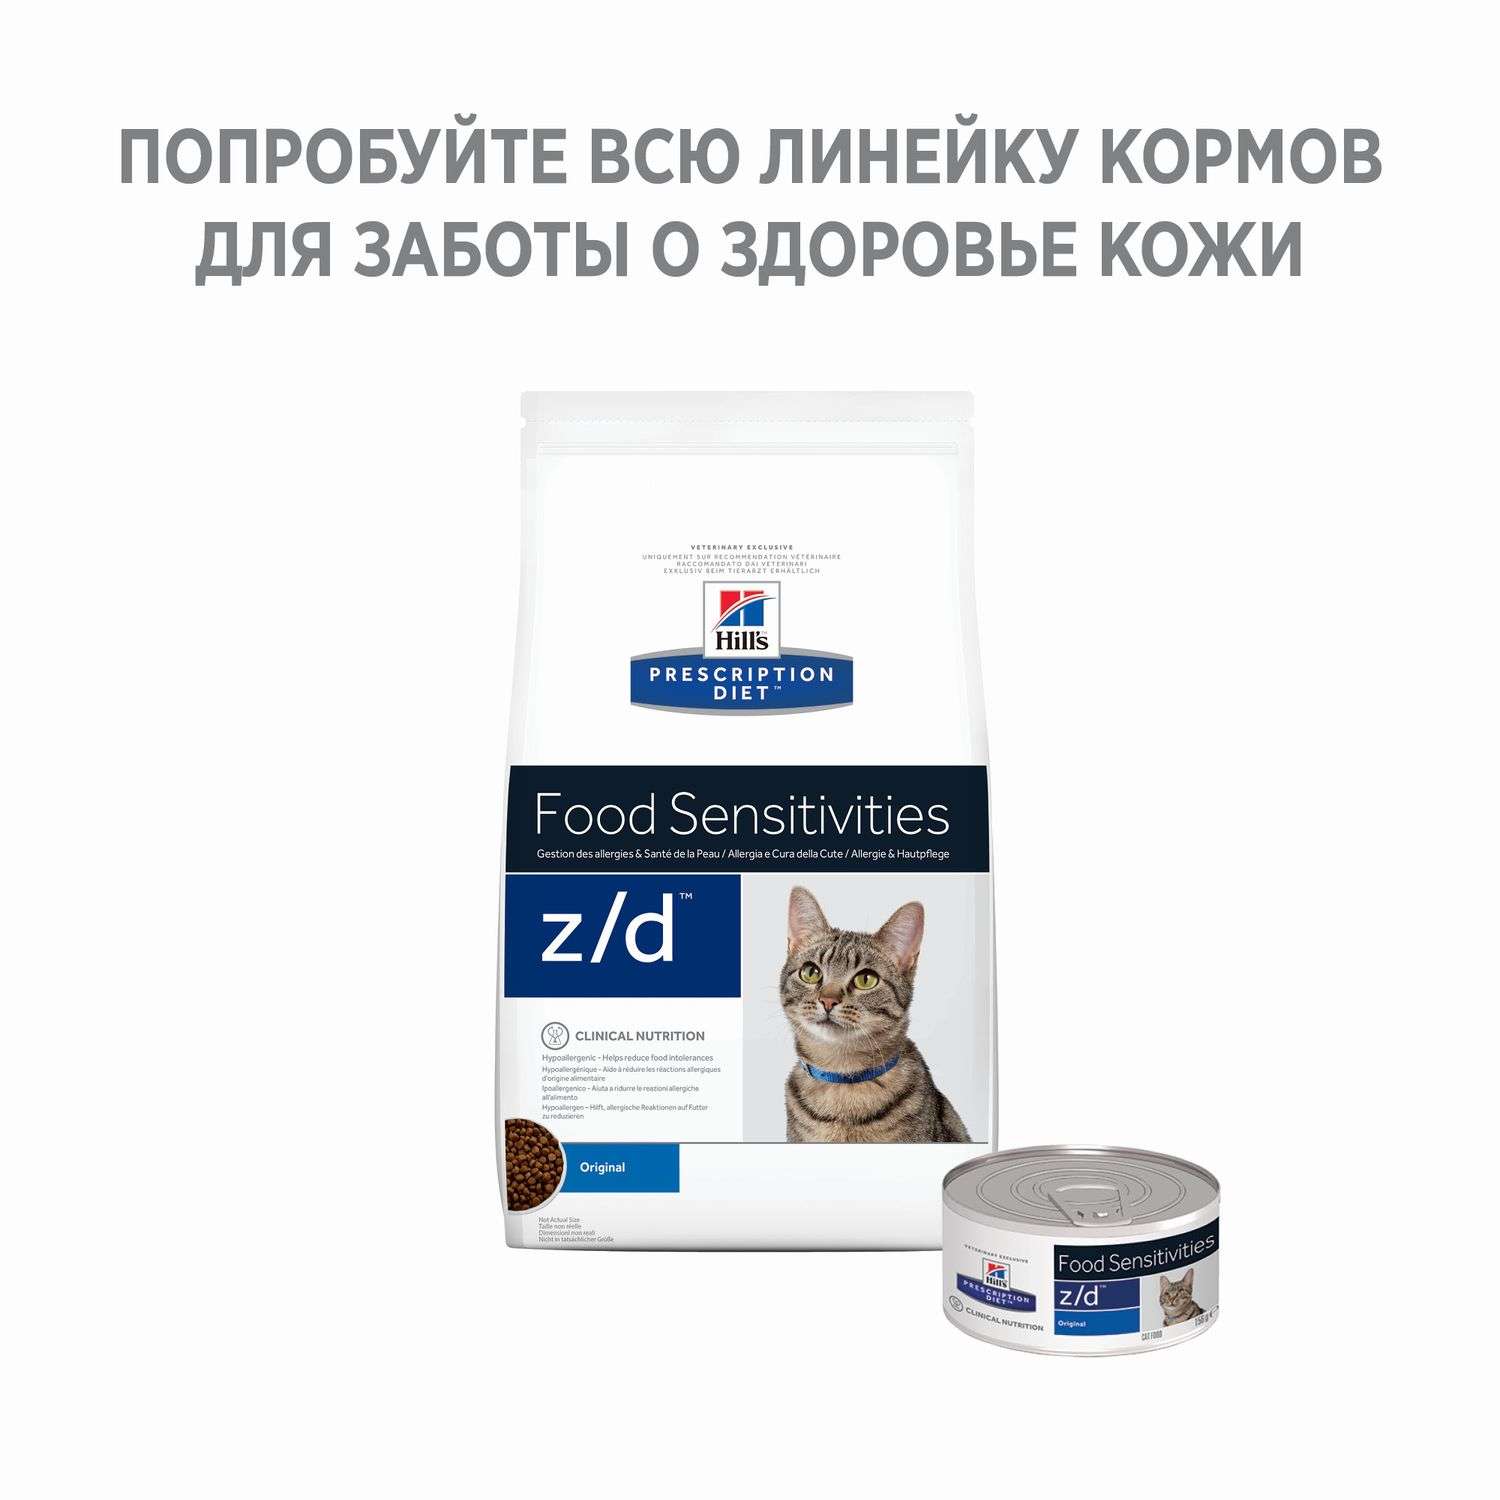 Корм для кошек HILLS 2кг Prescription Diet z/d Food Sensitivities для кожи и при аллергии и заболеваниях кожи сухой - фото 4